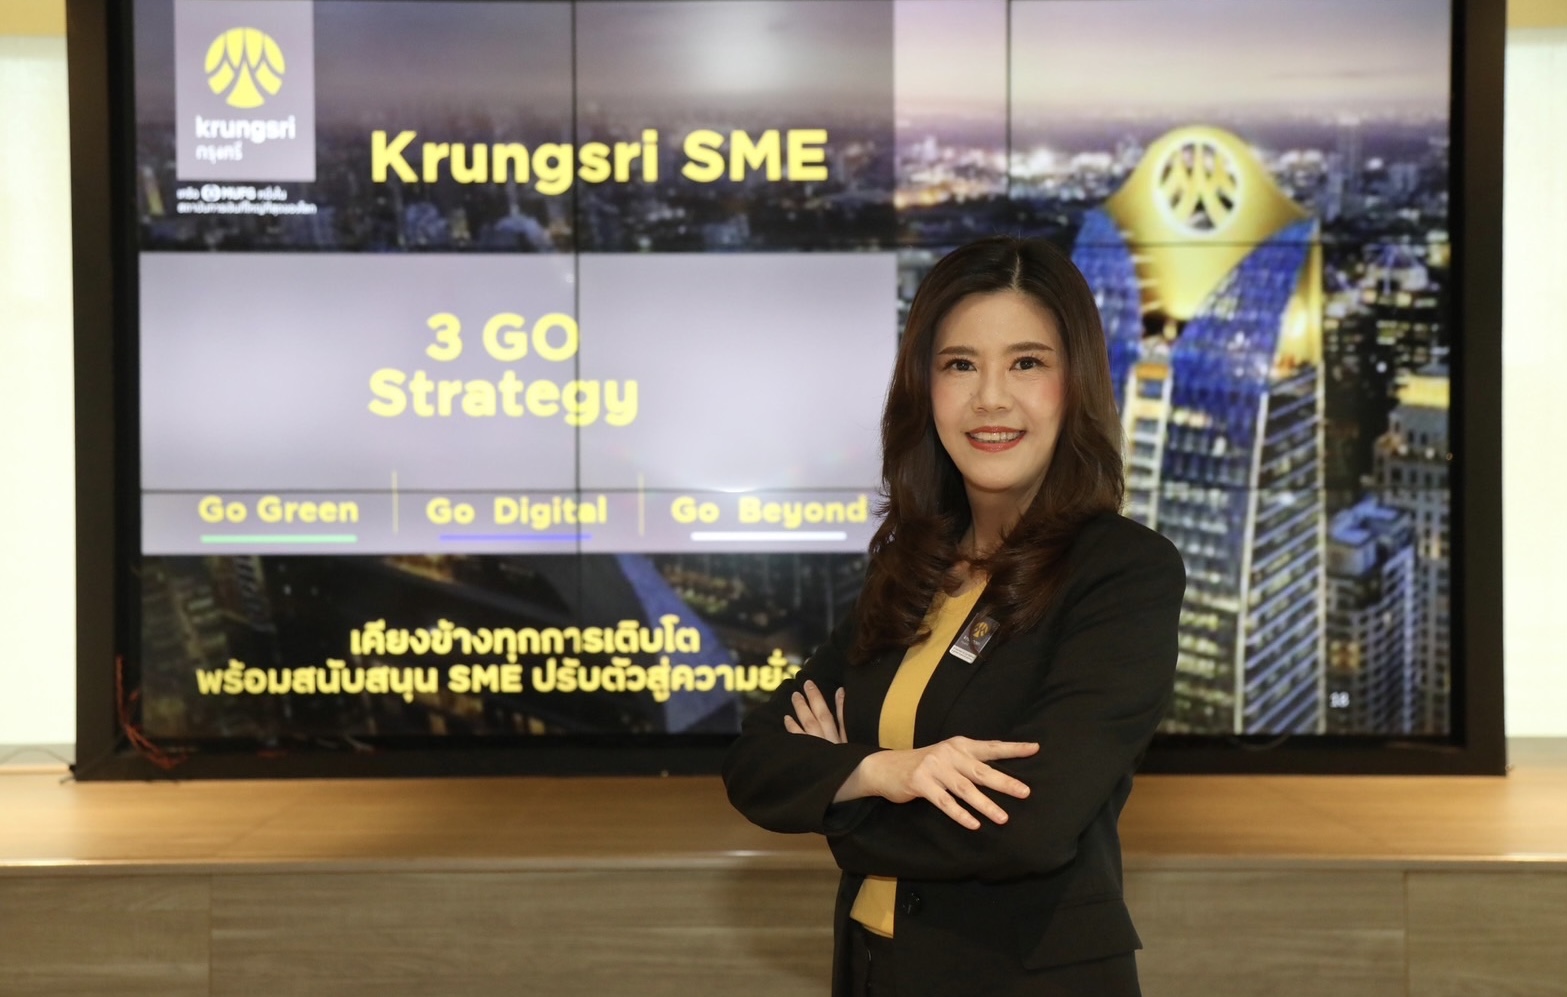 กรุงศรี SME เดินหน้าด้วยกลยุทธ์ 3GO ‘GO Green – GO Digital – GO Beyond’ ปั้น SME ไทย เติบโตสู่ก้าวที่ยั่งยืน